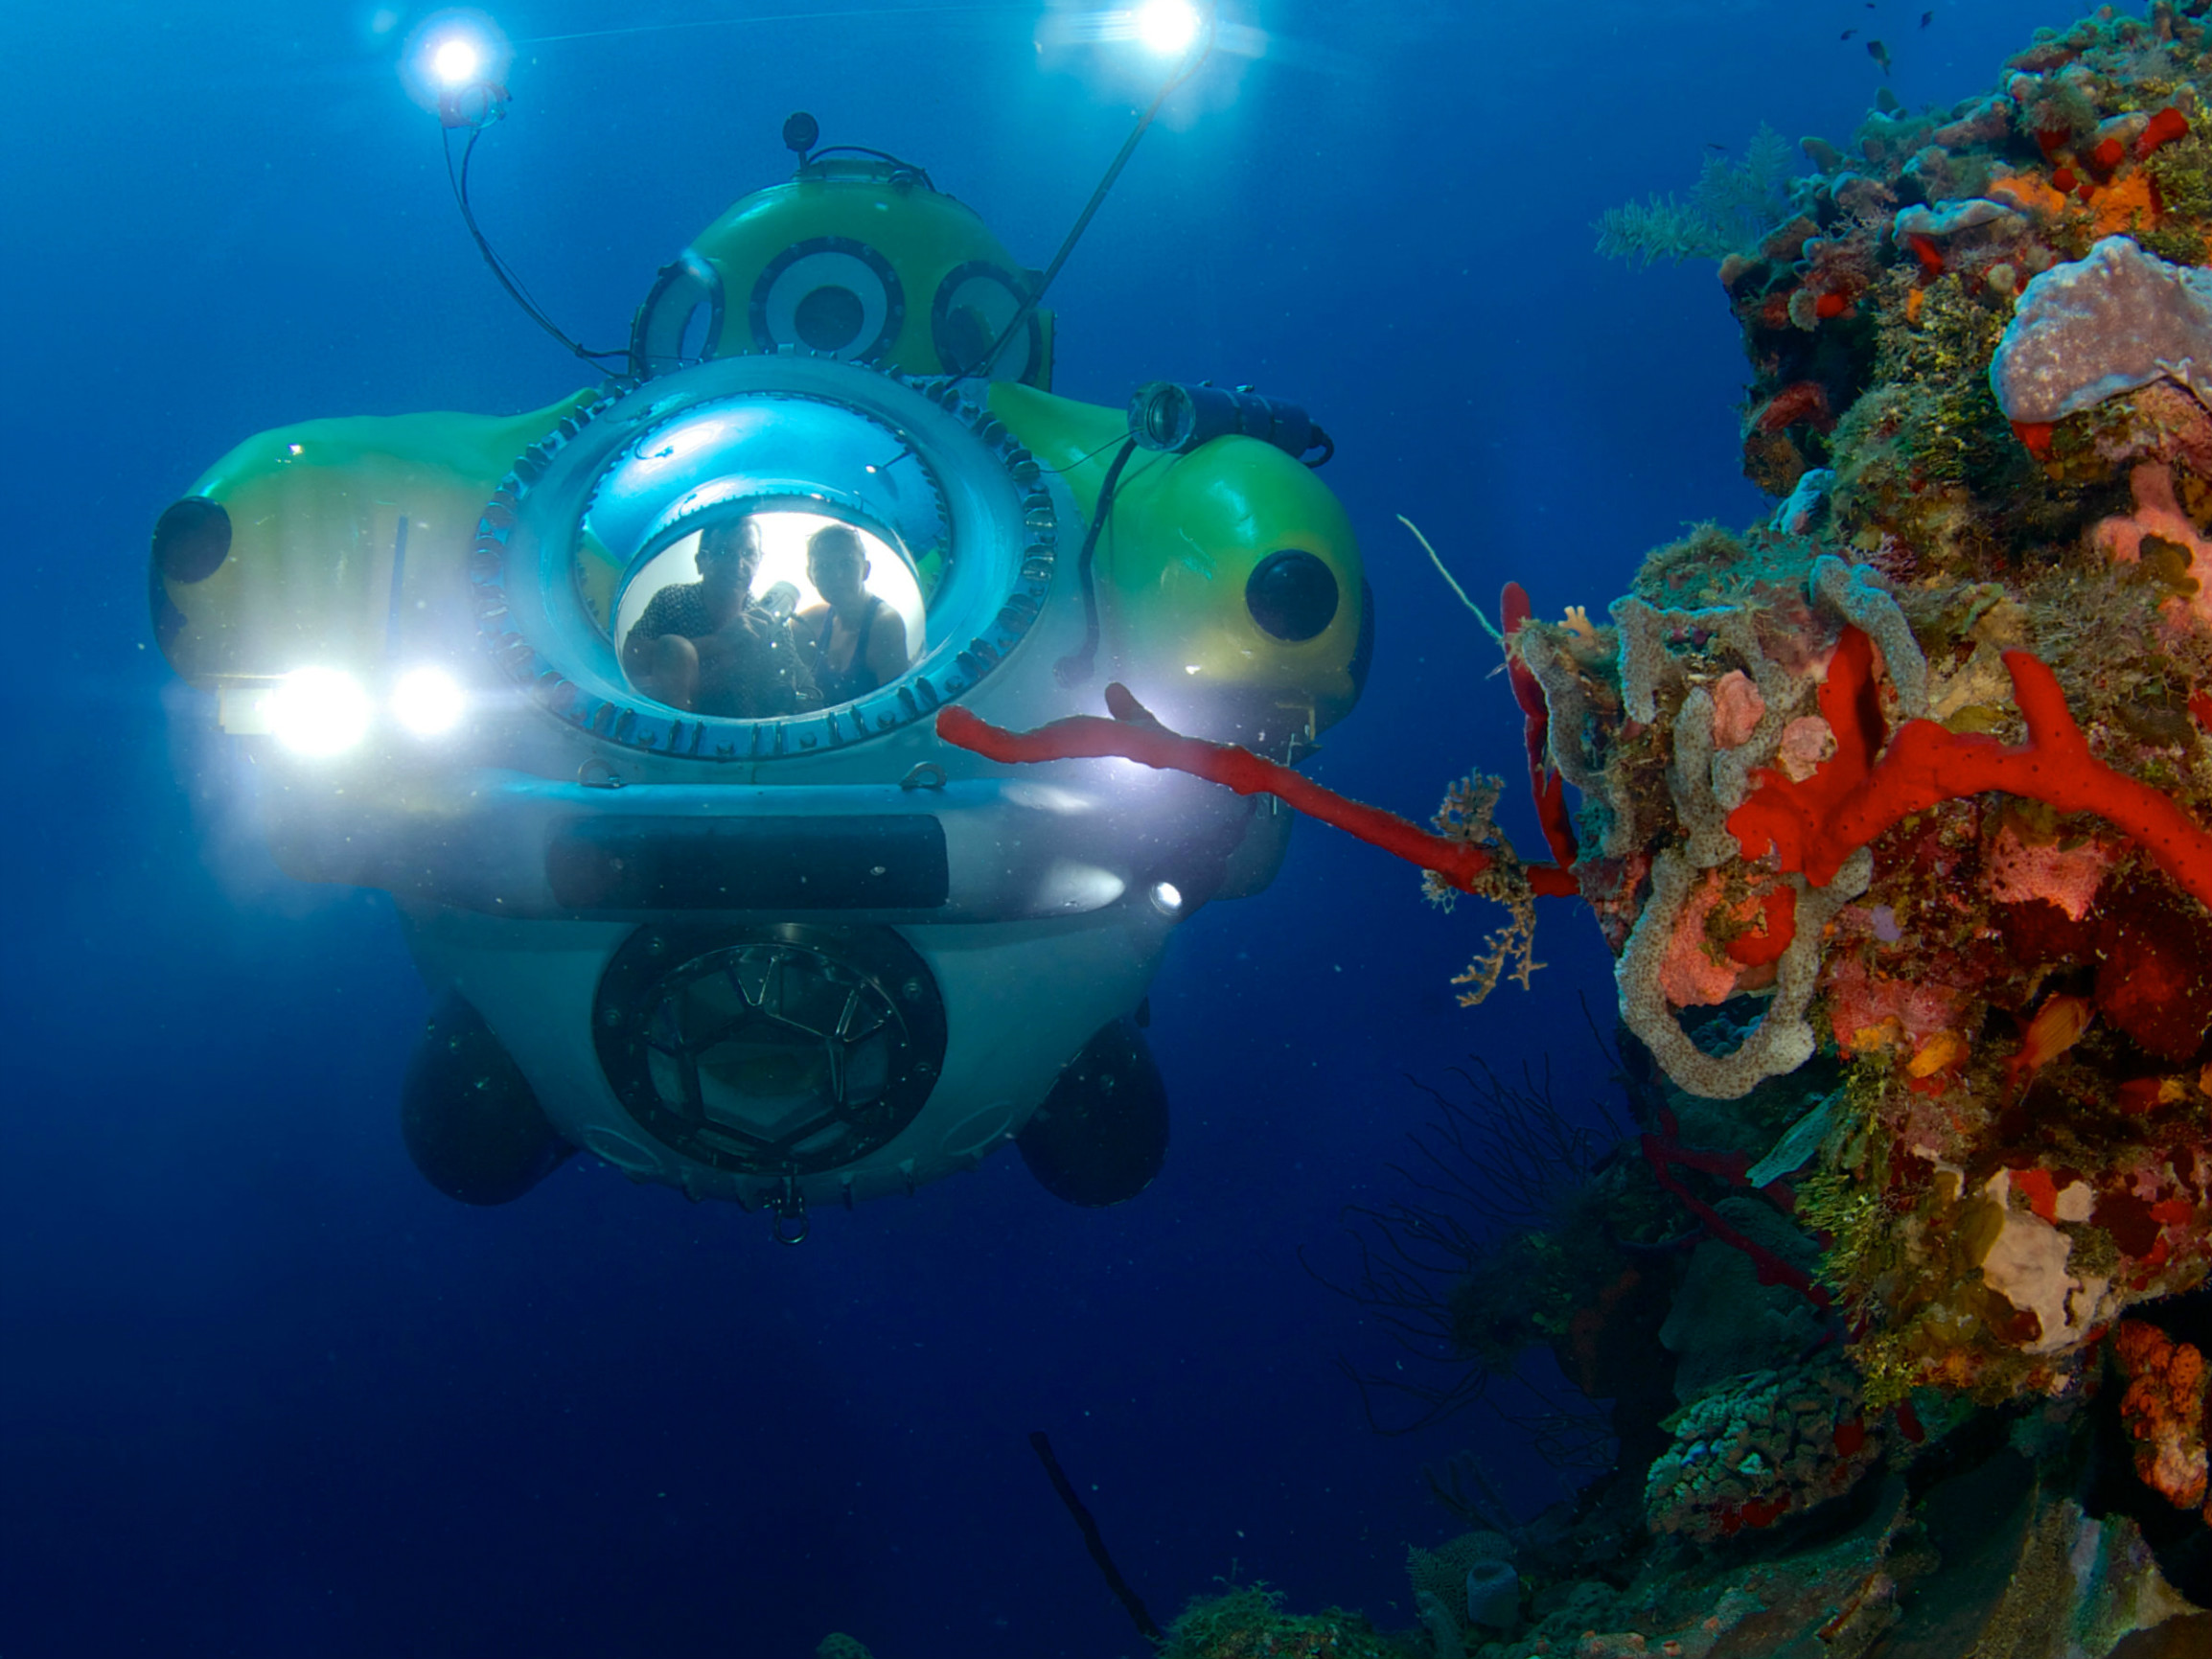 "Idabel" Deep Submersible Submarine at Roatan Honduras